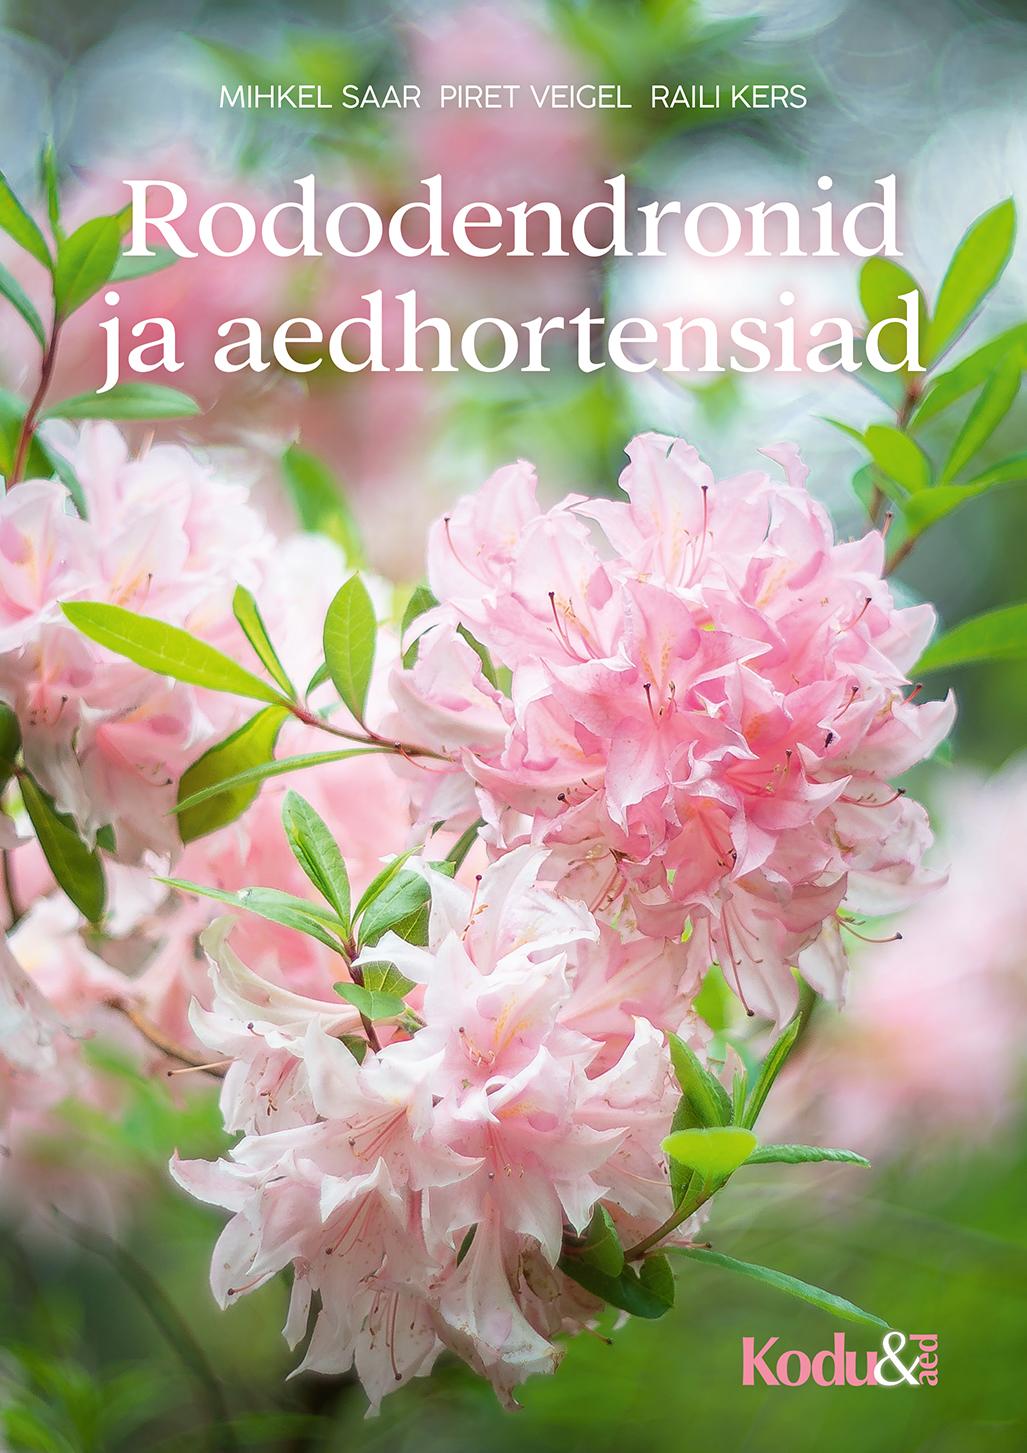 Rododendronid ja hortensiad